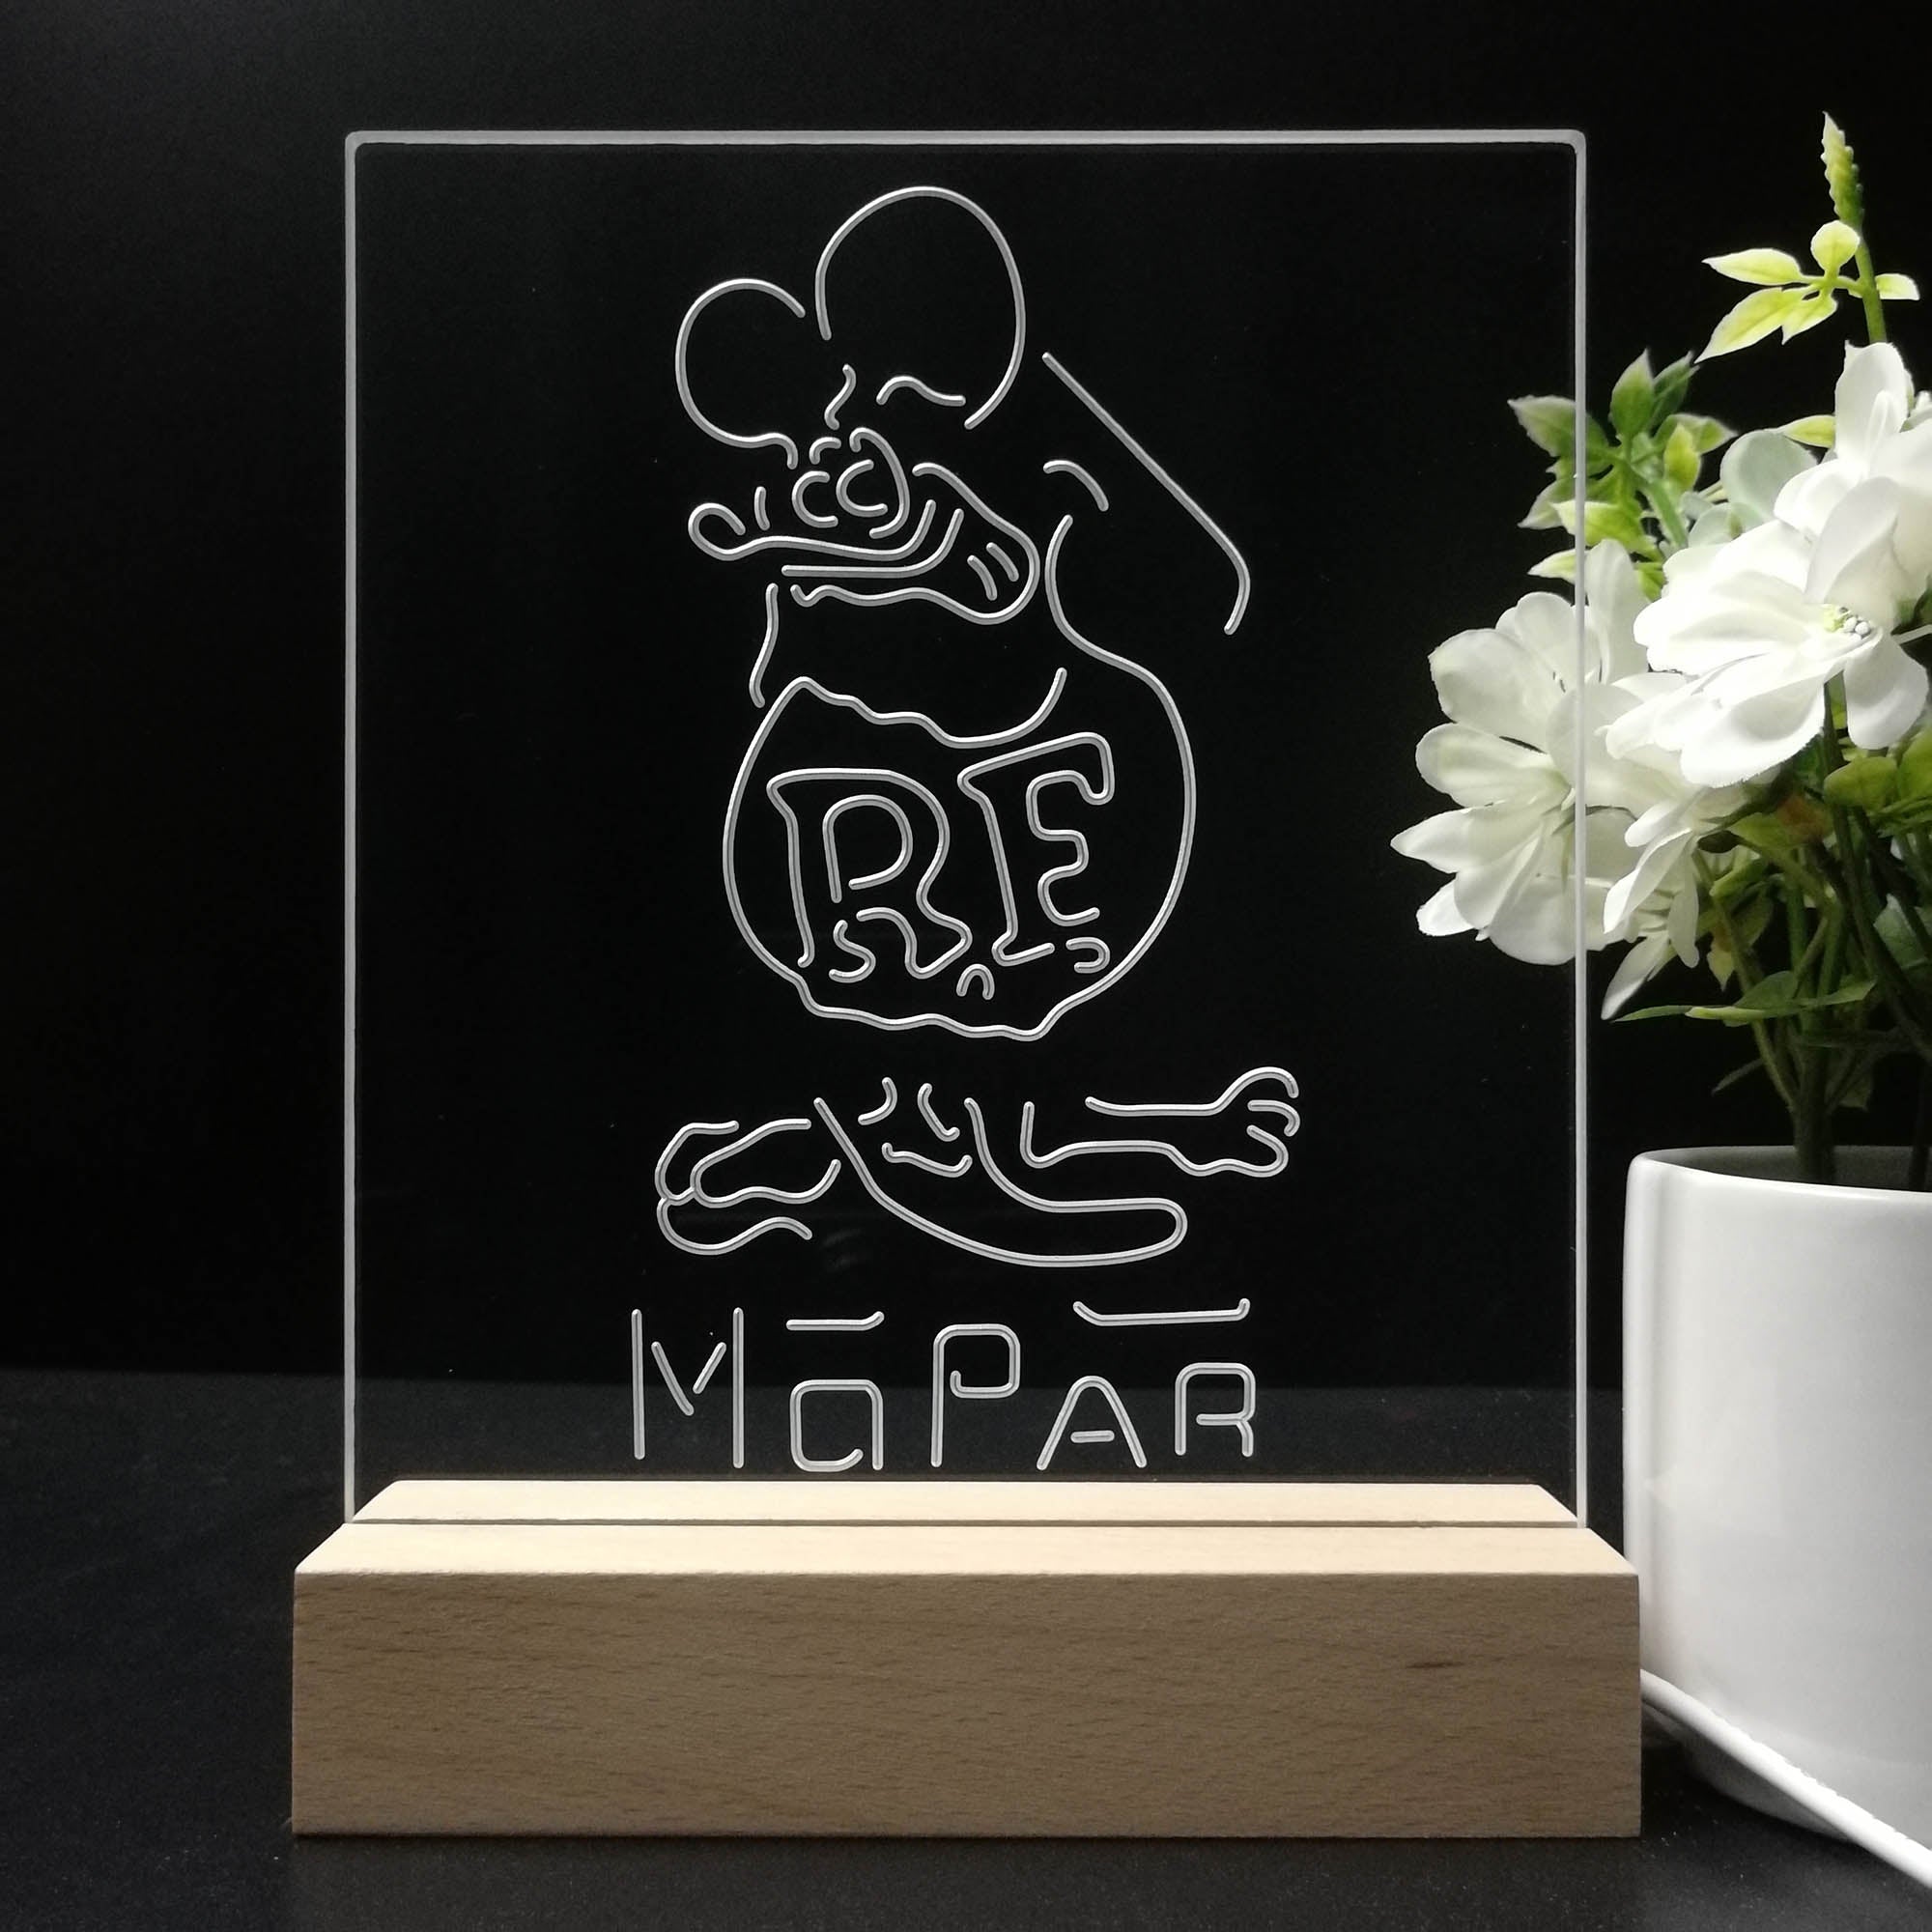 Rat Fink Retro RF Mopar 3D LED Illusion Night Light